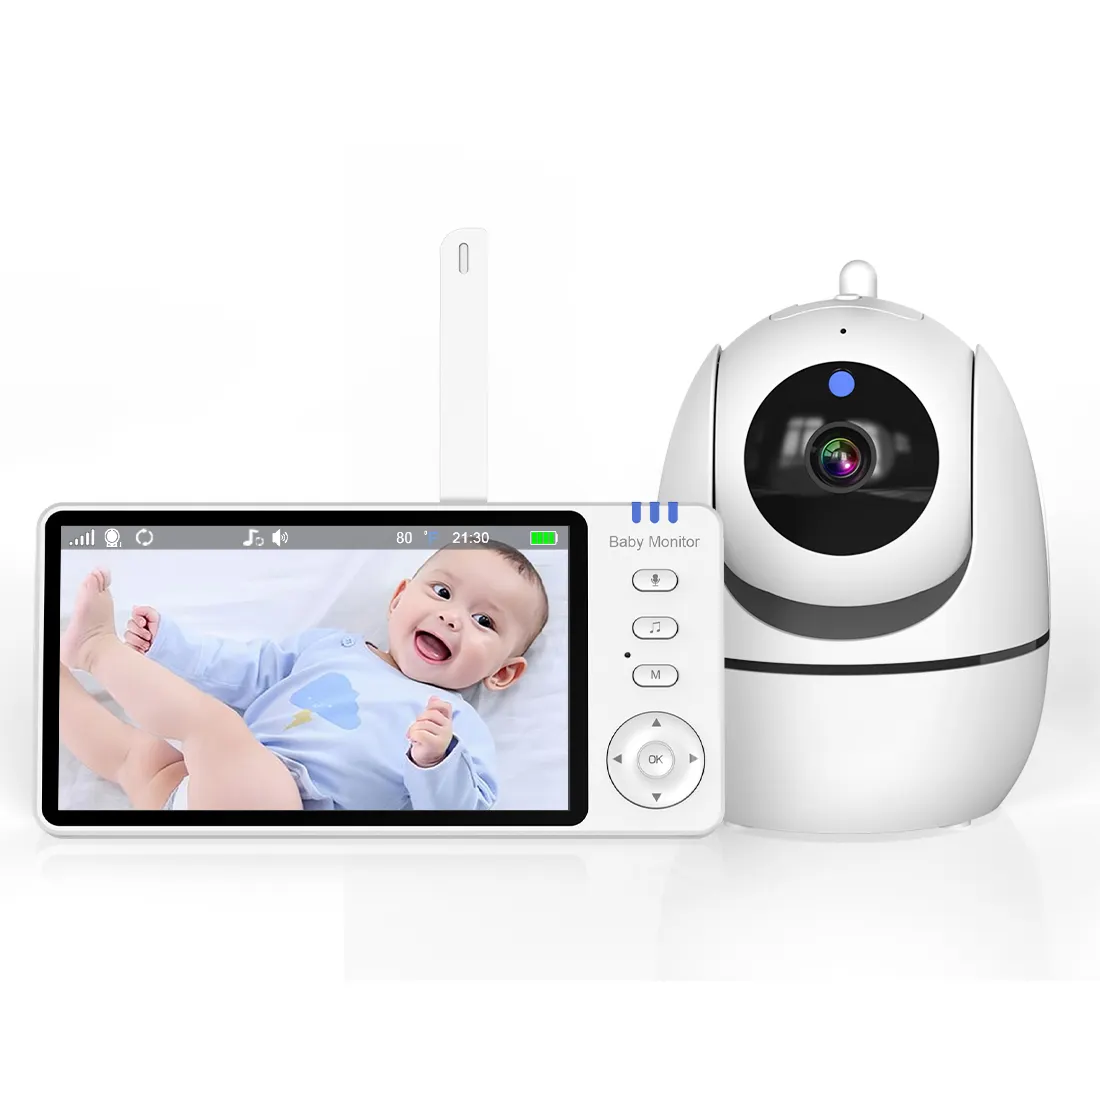 En iyi fiyat 5 inç 720p fabrika dijital Video bebek izleme monitörü kamera ağlayan algılama ile yeni bebek ses kamera bebek izleme monitörü